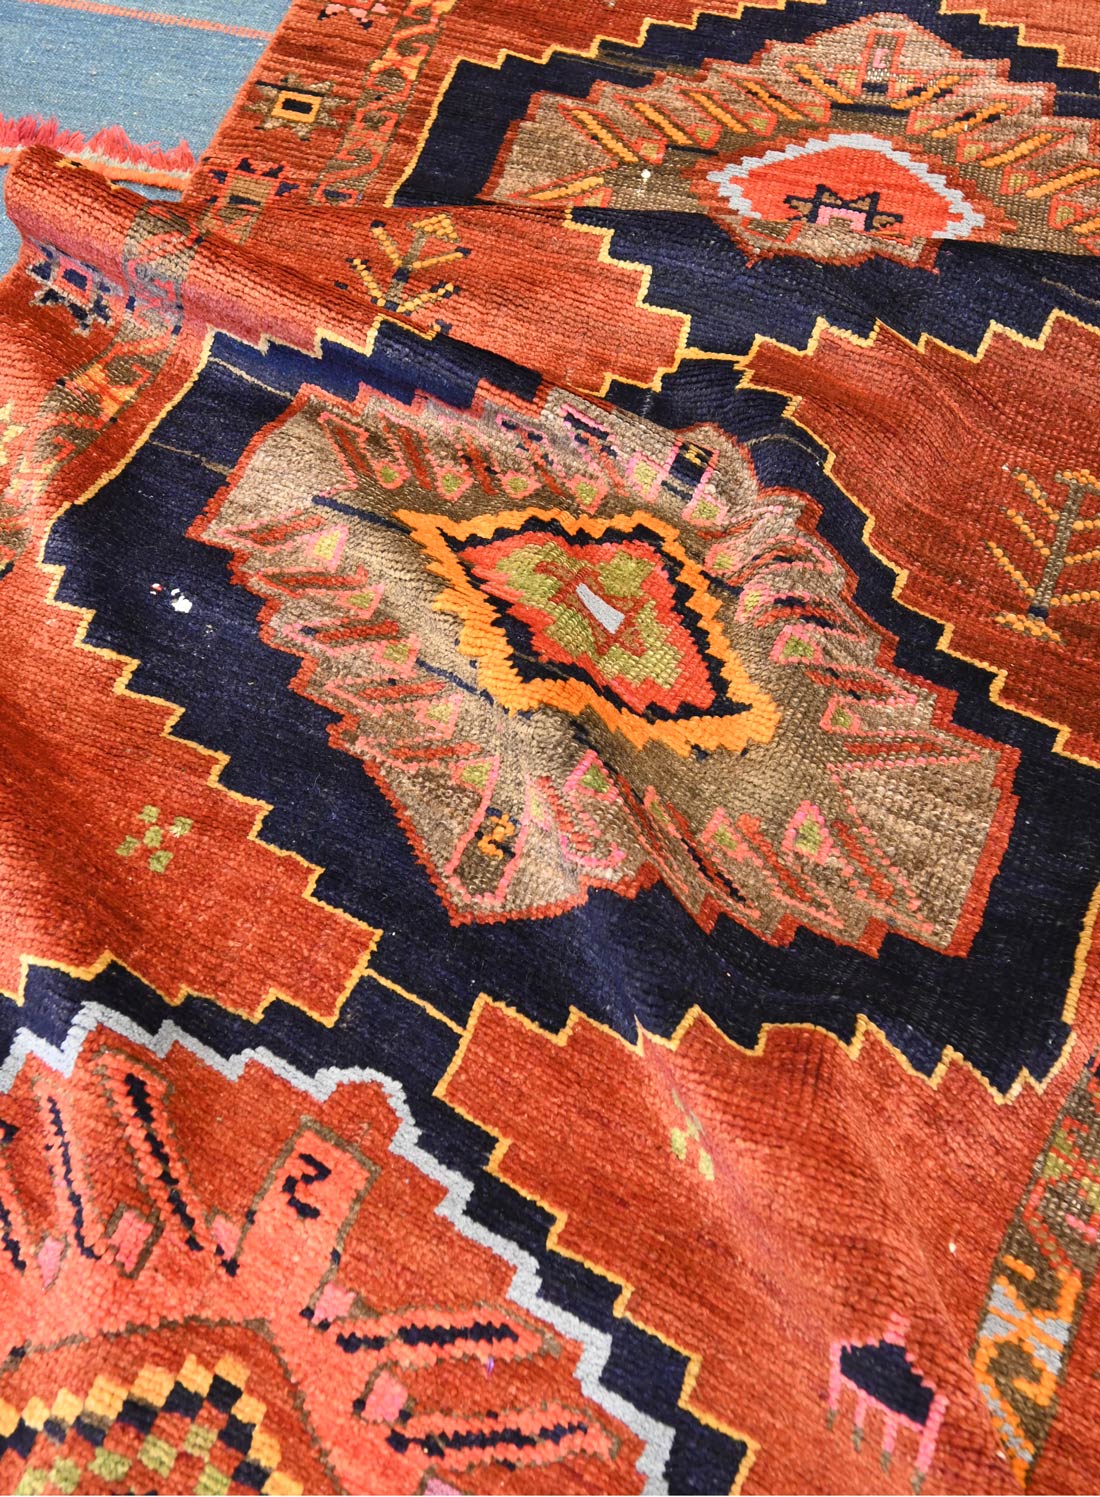 A crazy tribal rug!